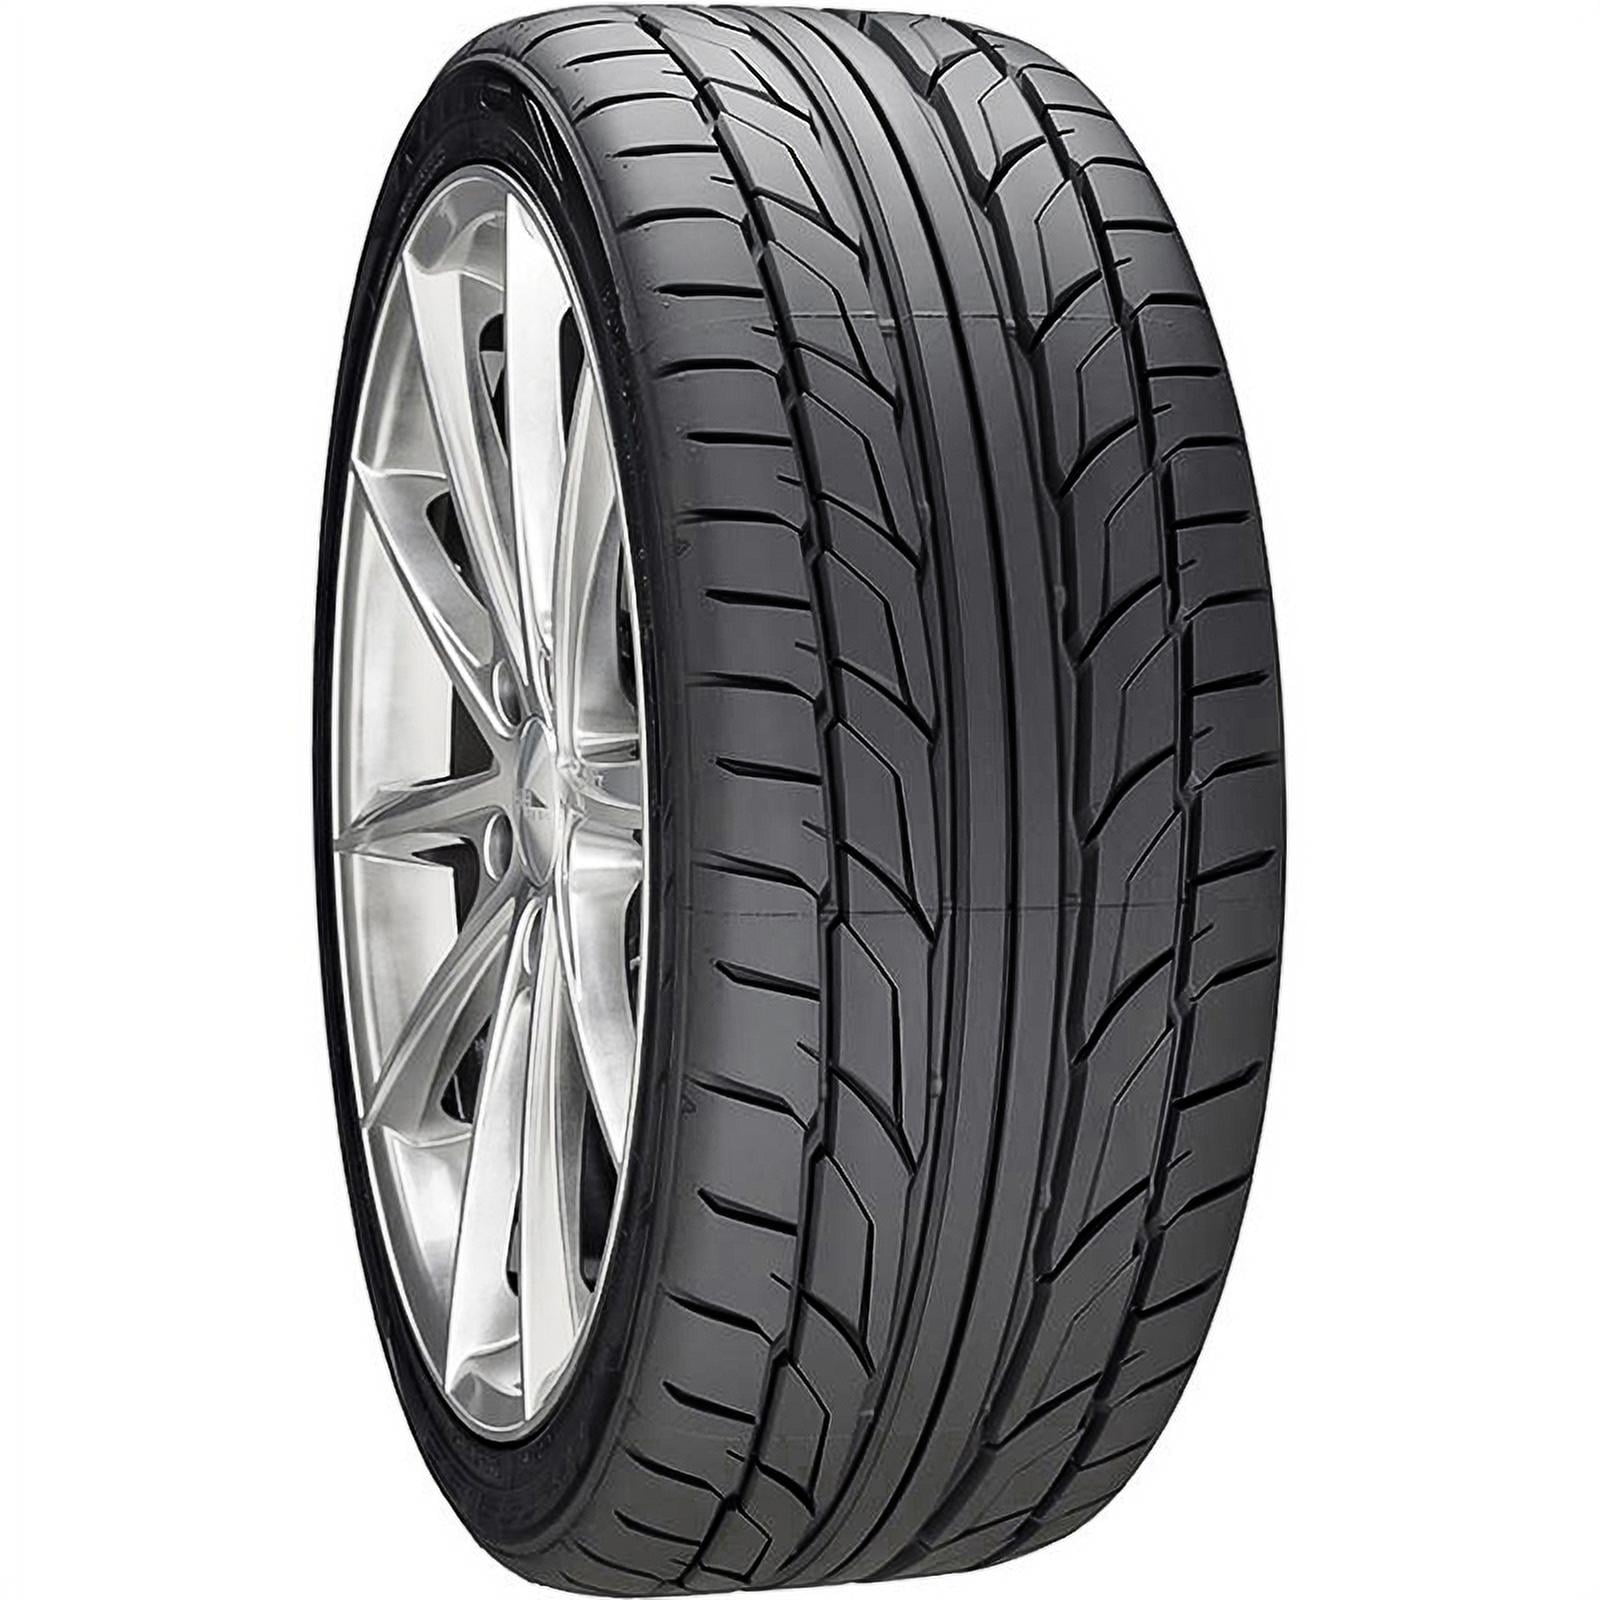 4-Nitto NT555 G2 225/40ZR18 R18 92W XL Tires 